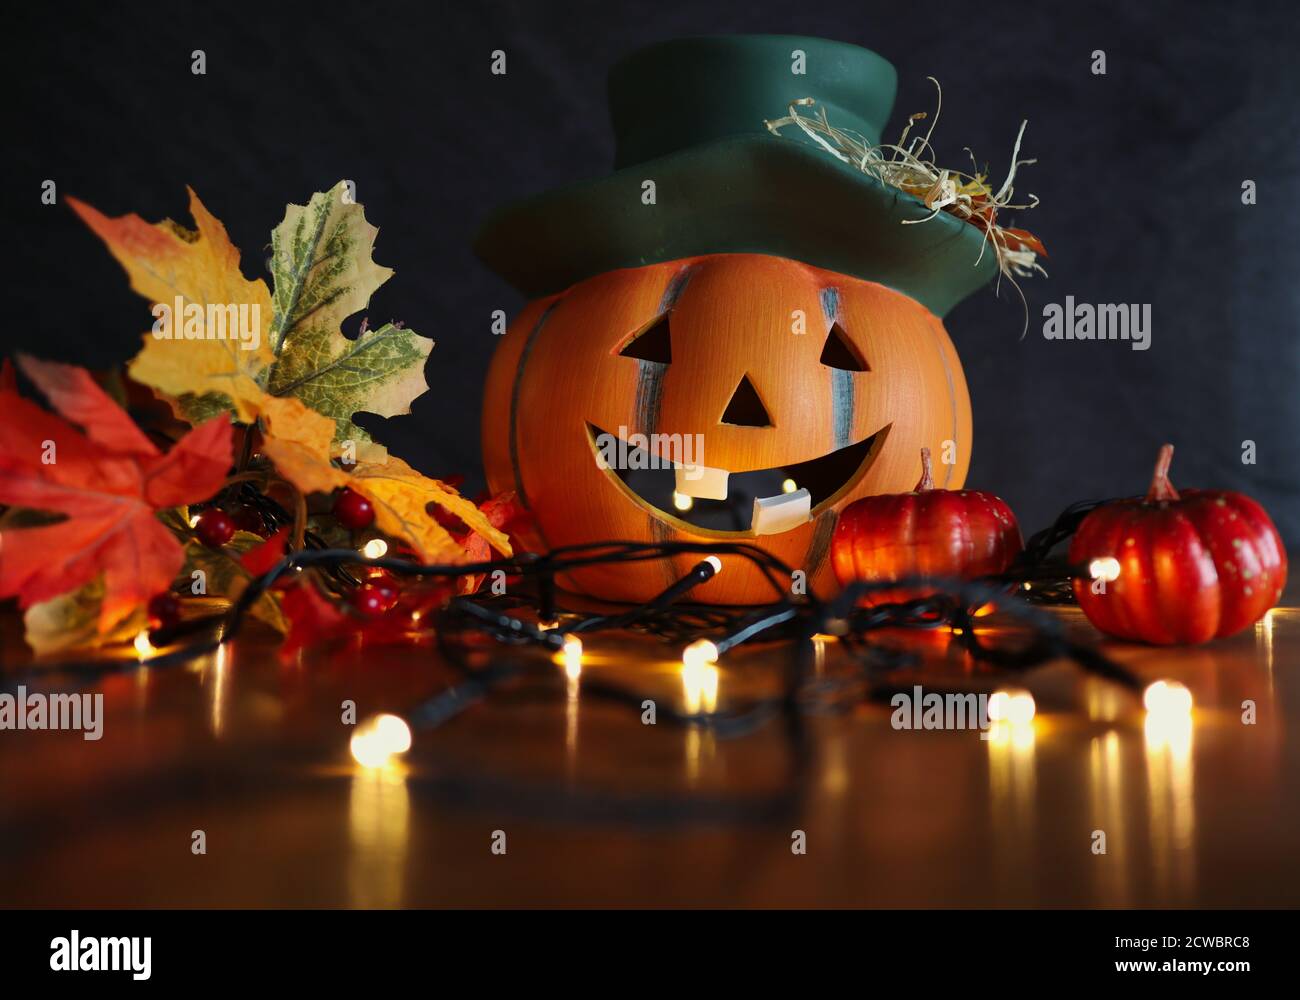 Keramik Halloween Orange Kürbis mit Lächeln mit künstlichen Herbstblättern und blinkenden Lichtern. Herbst und Halloween Vibes. Stockfoto